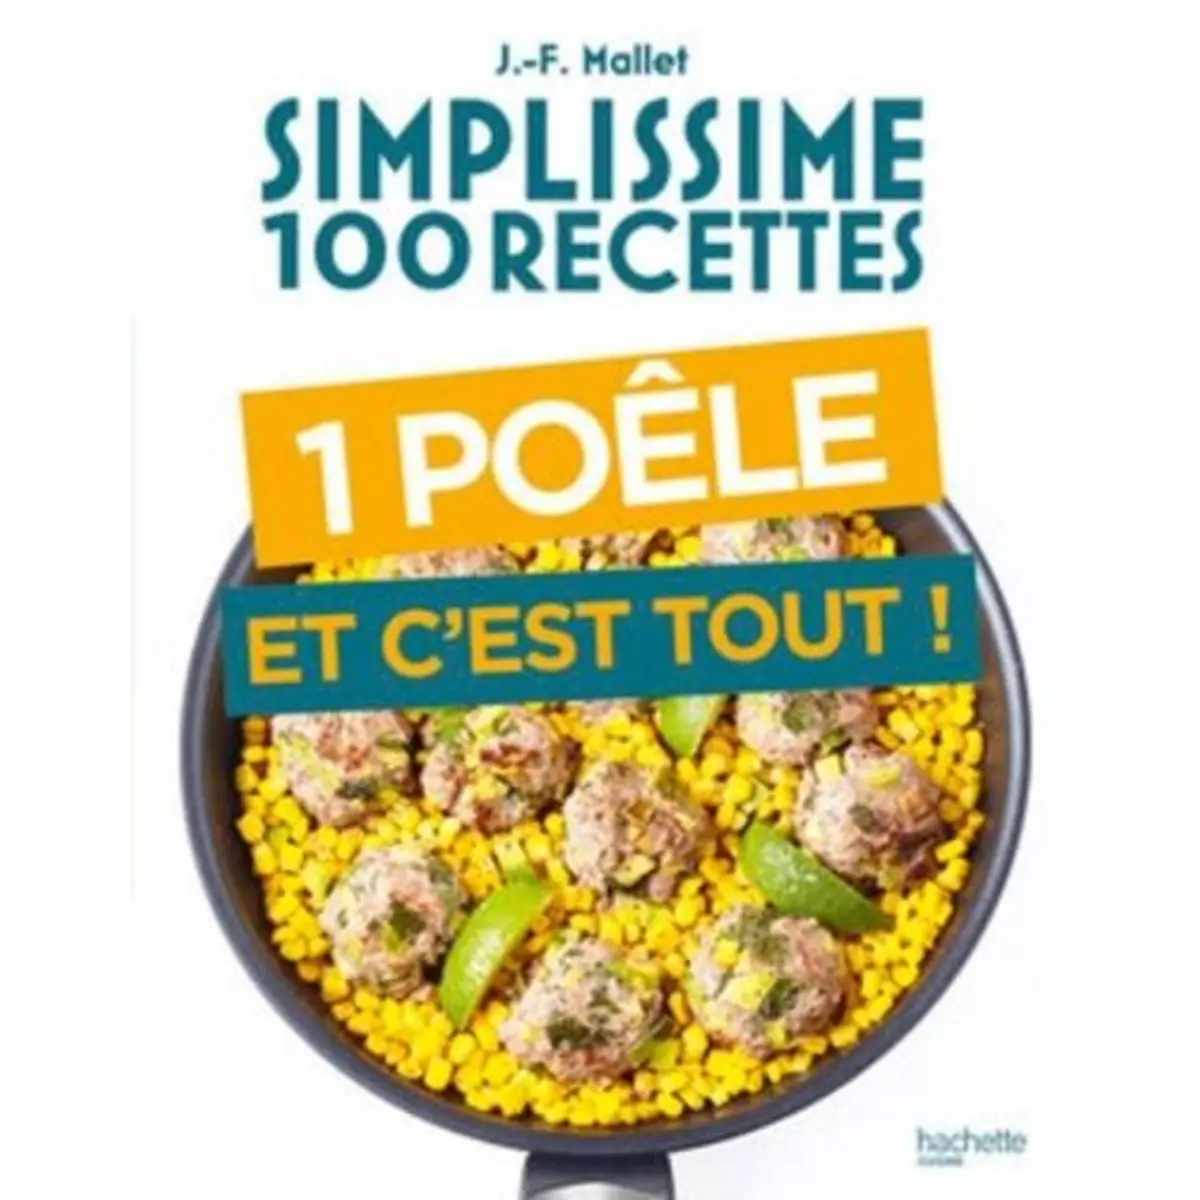  1 POELE ET C'EST TOUT !, Mallet Jean-François